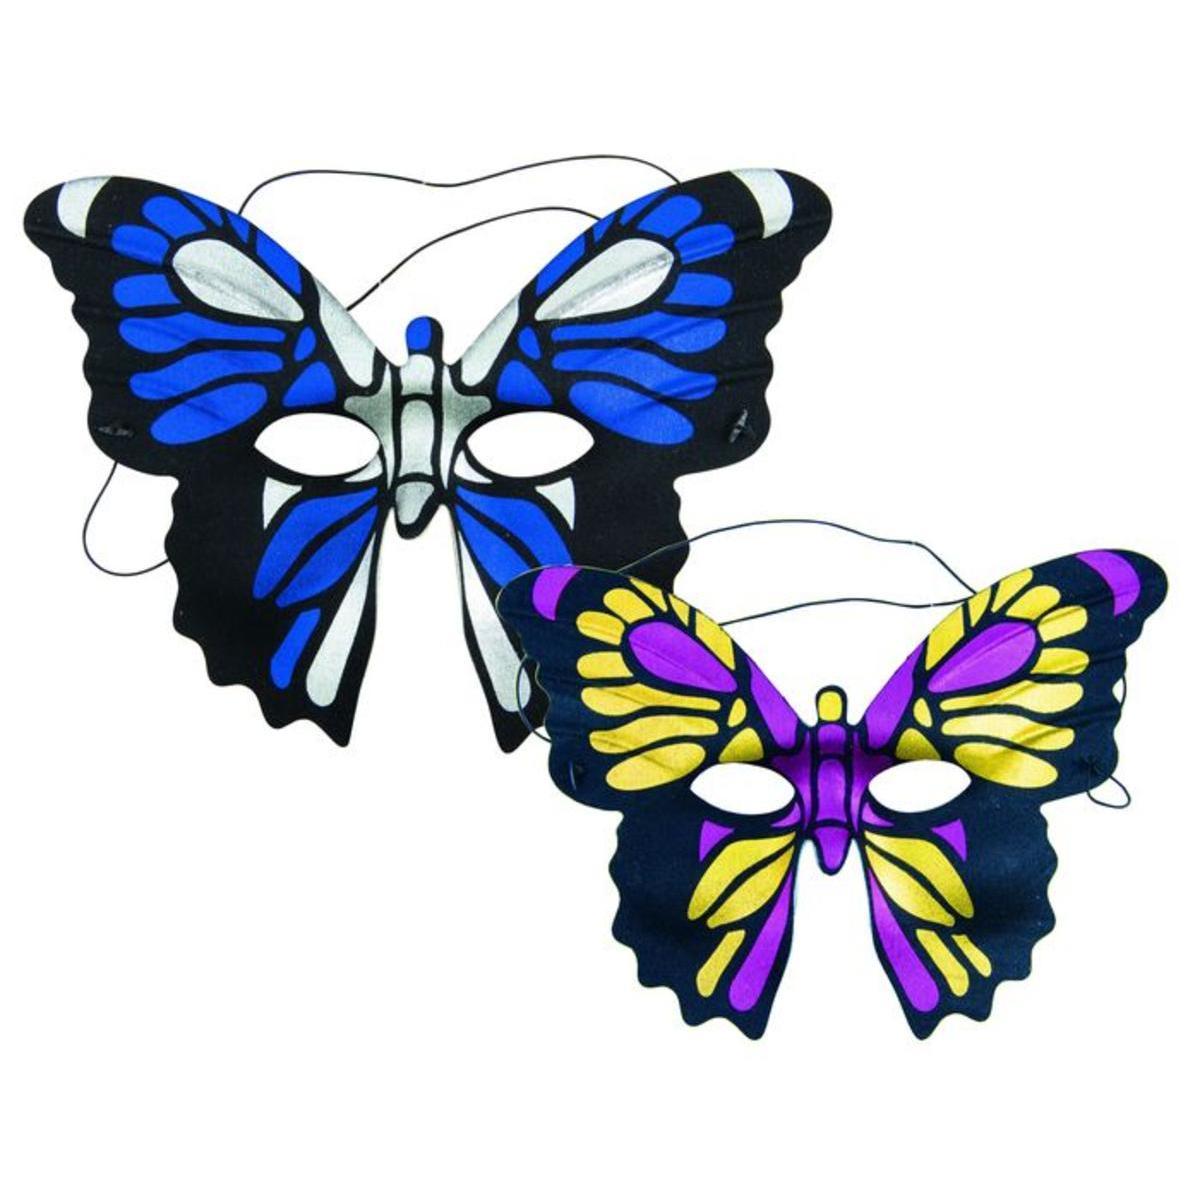 Loup papillon - Différents coloris assortis - L 23 x H x l 27 cm - Multicolore - PTIT CLOWN